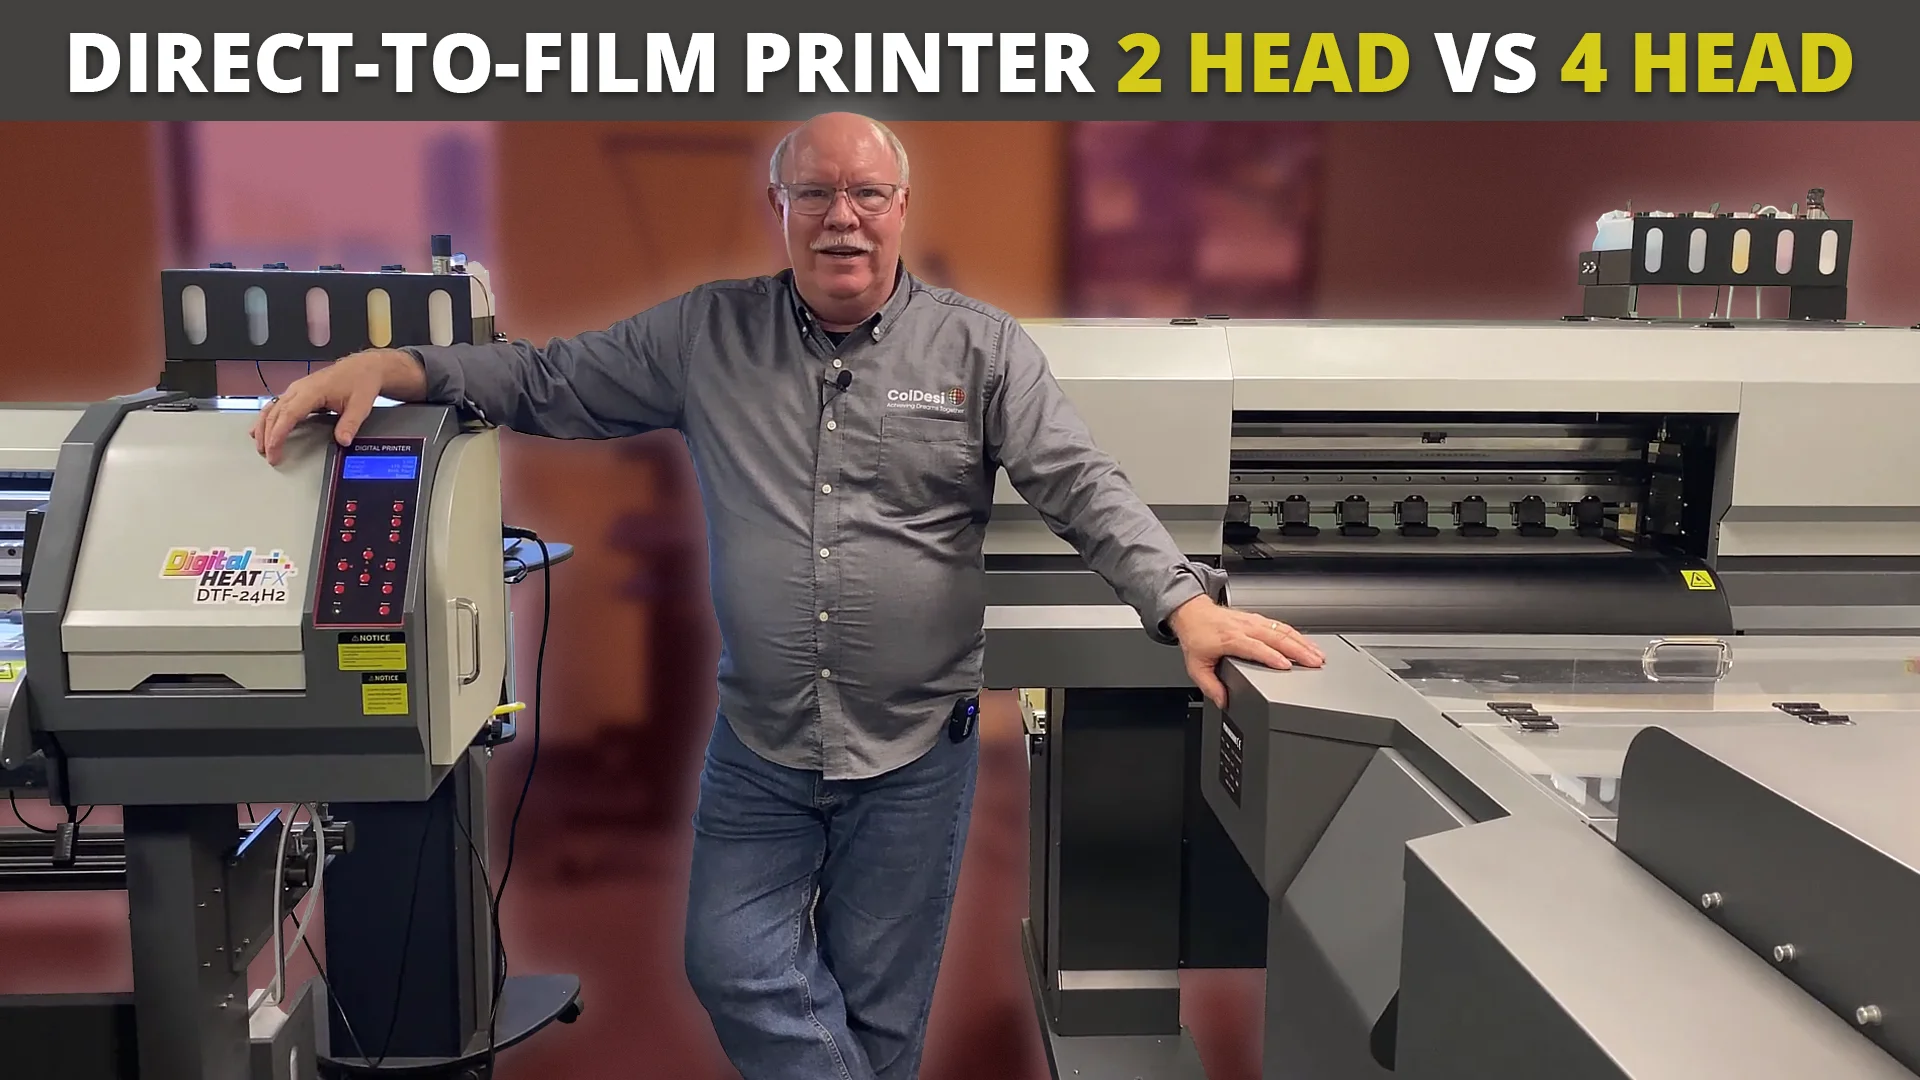 Direct-to-Film Printer 2 Head vs. 4 Head